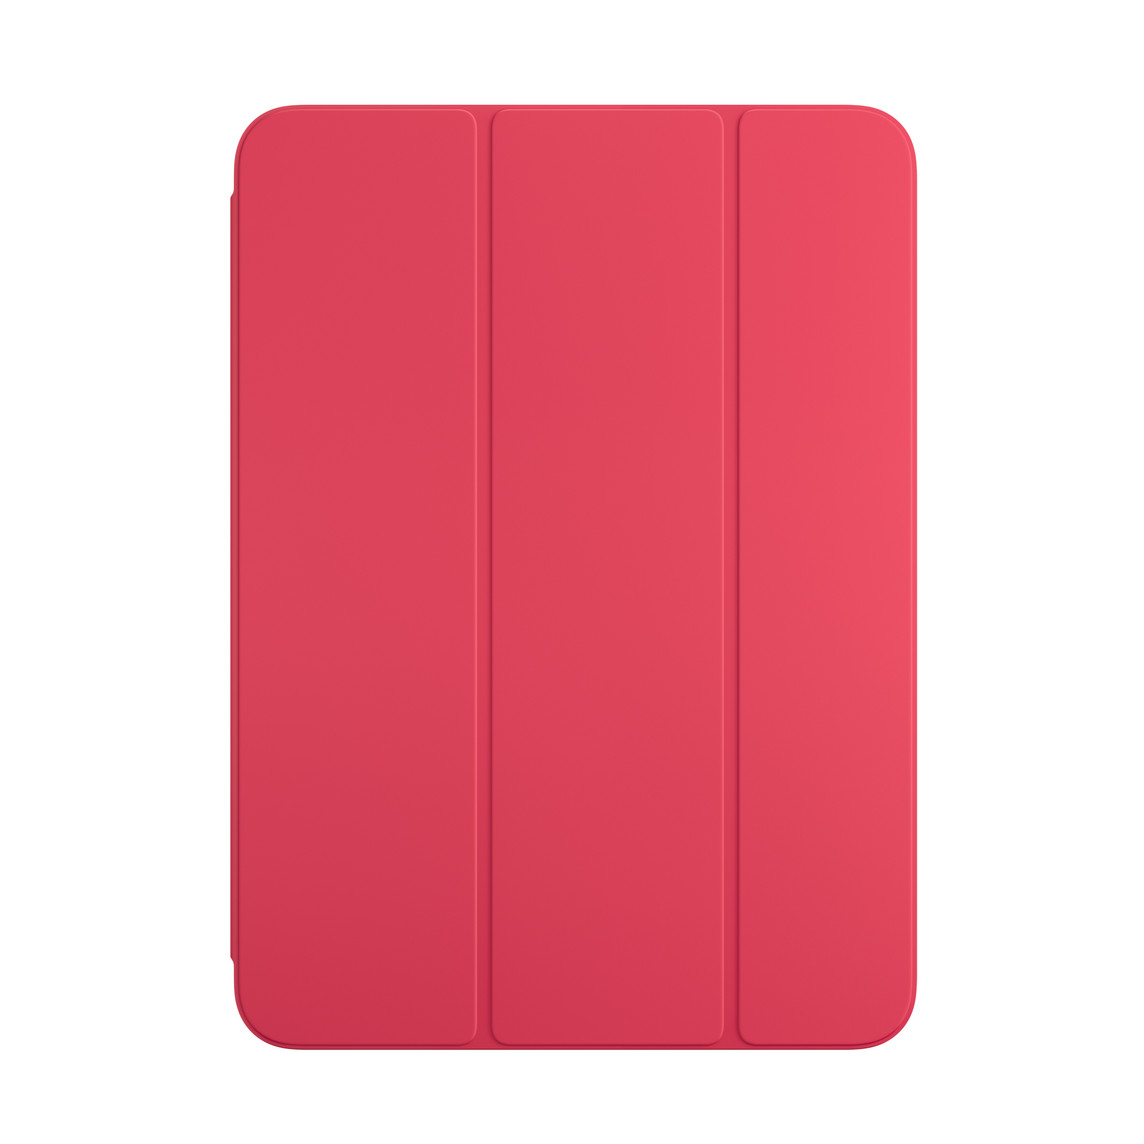 Vista frontal de la funda Smart Folio para el iPad en color sandía